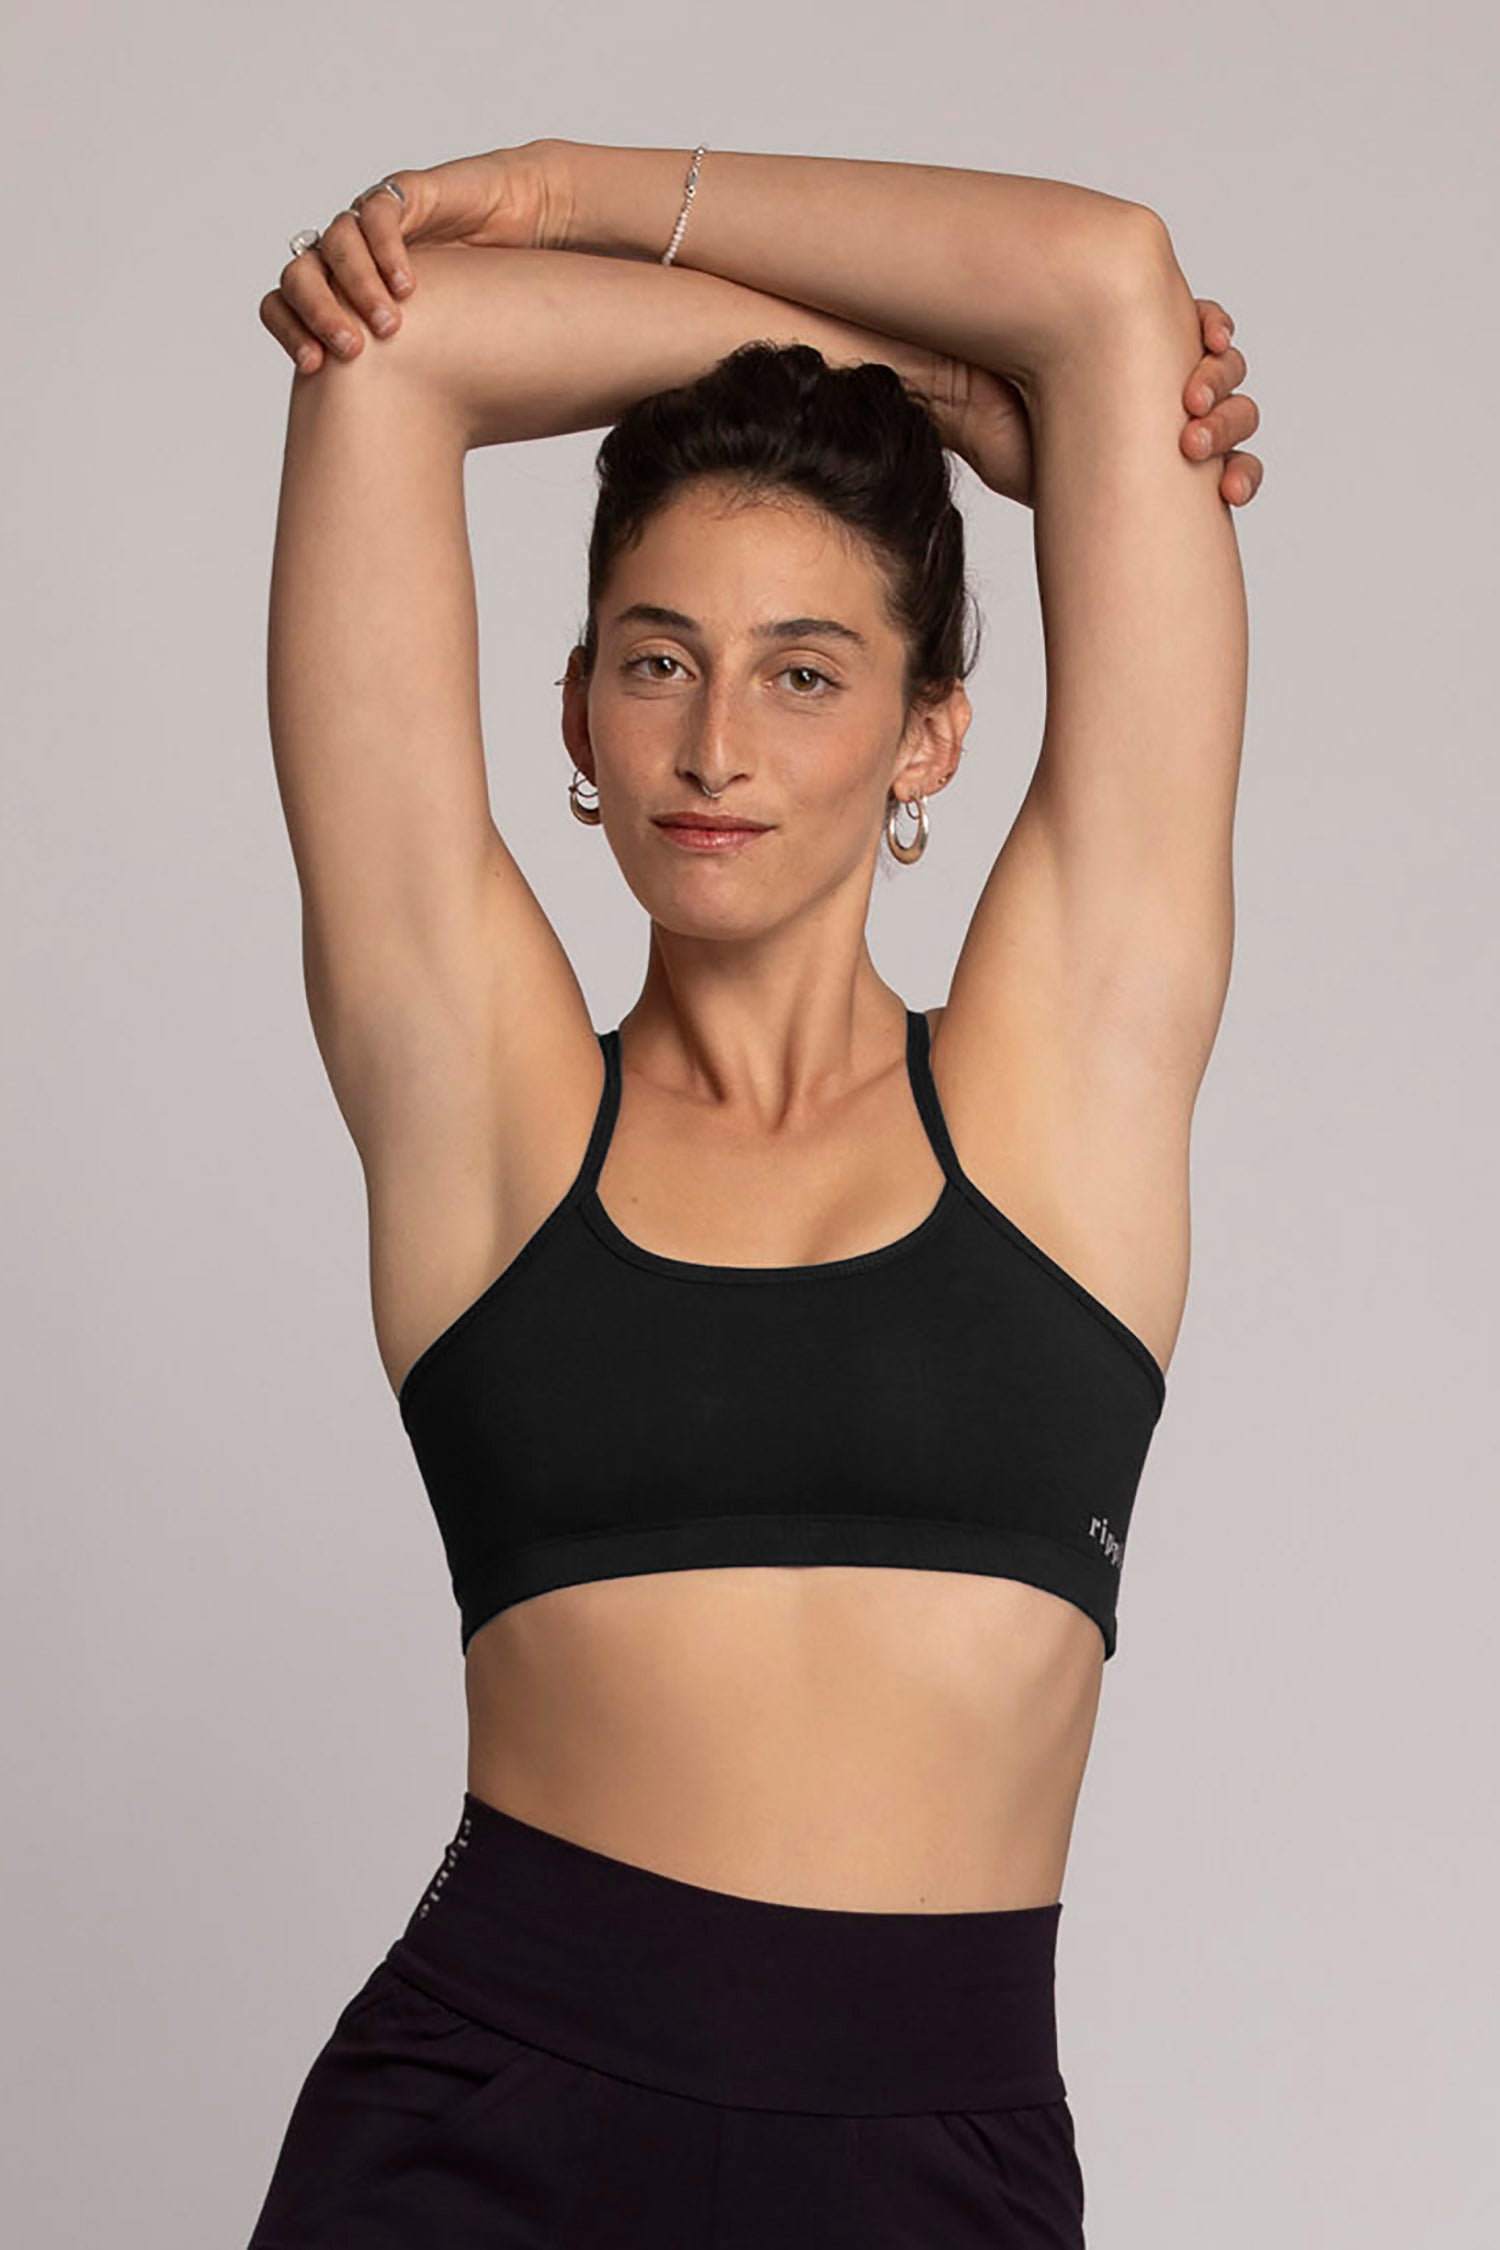 CrissCross yoga bra, Khaki with Hypnotik print